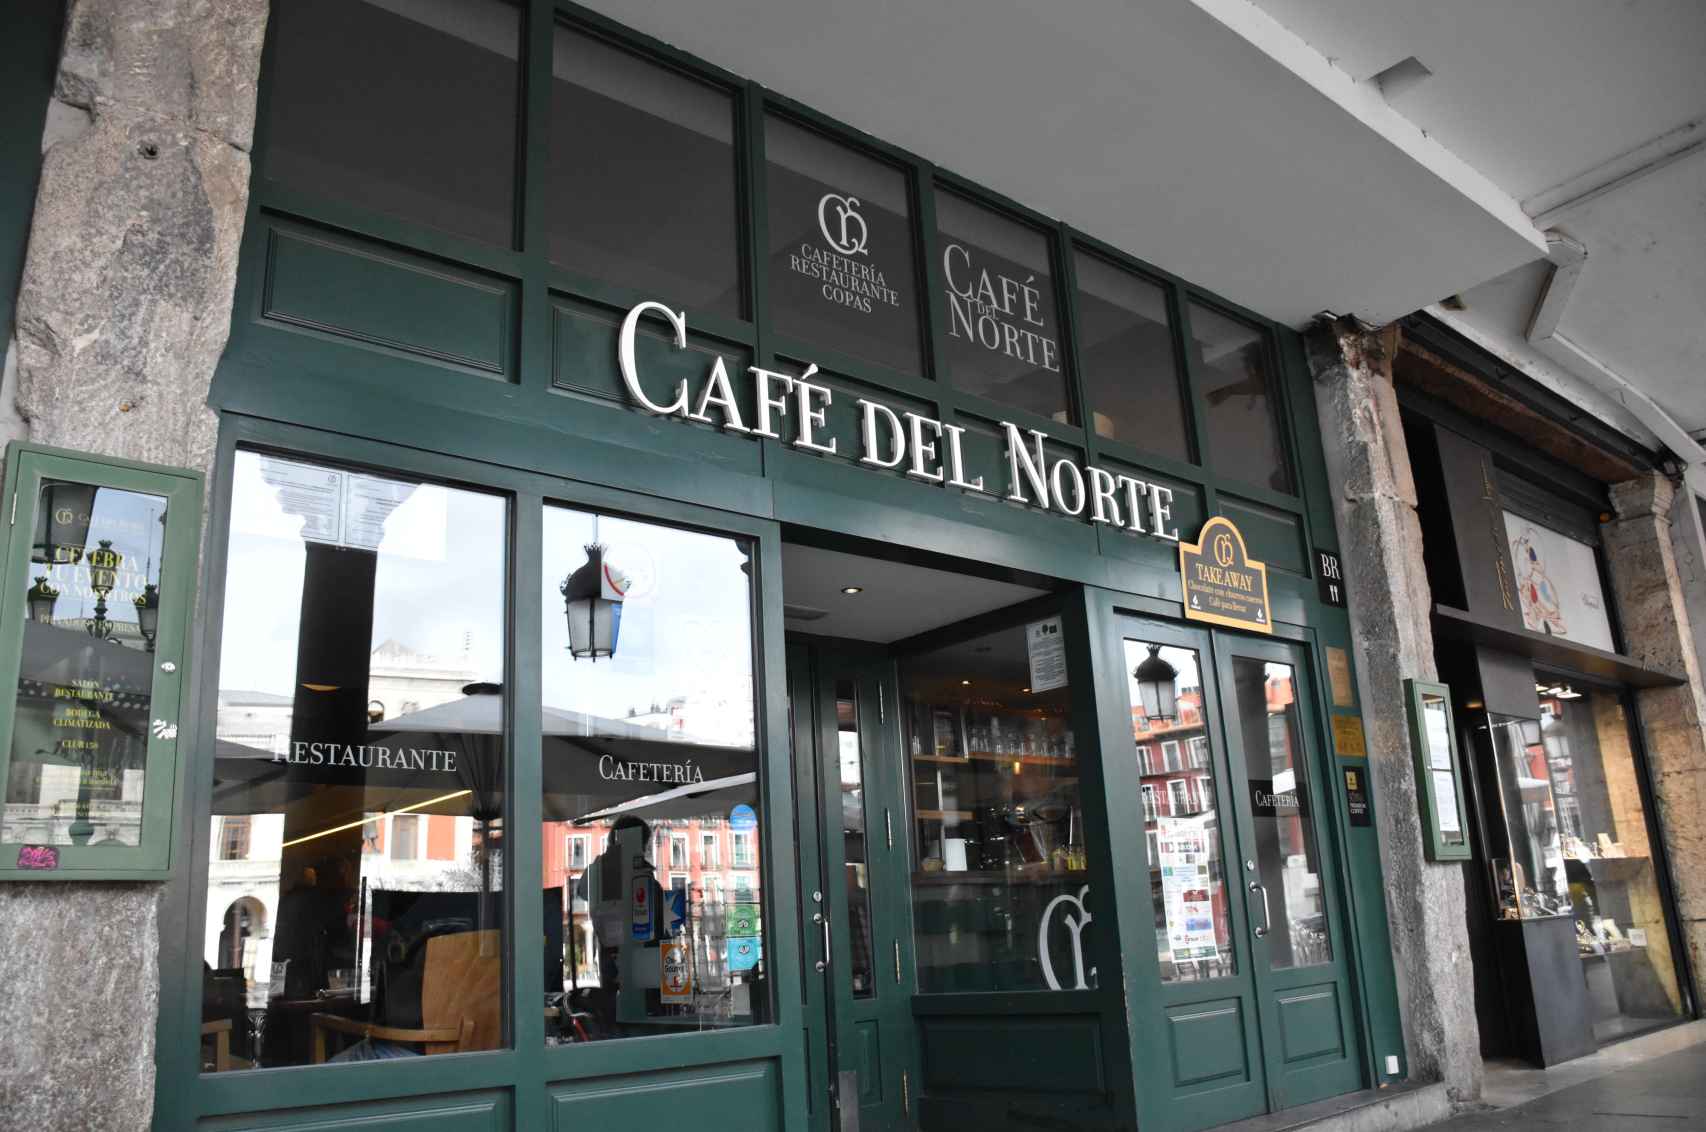 Entrada del Café del Norte.